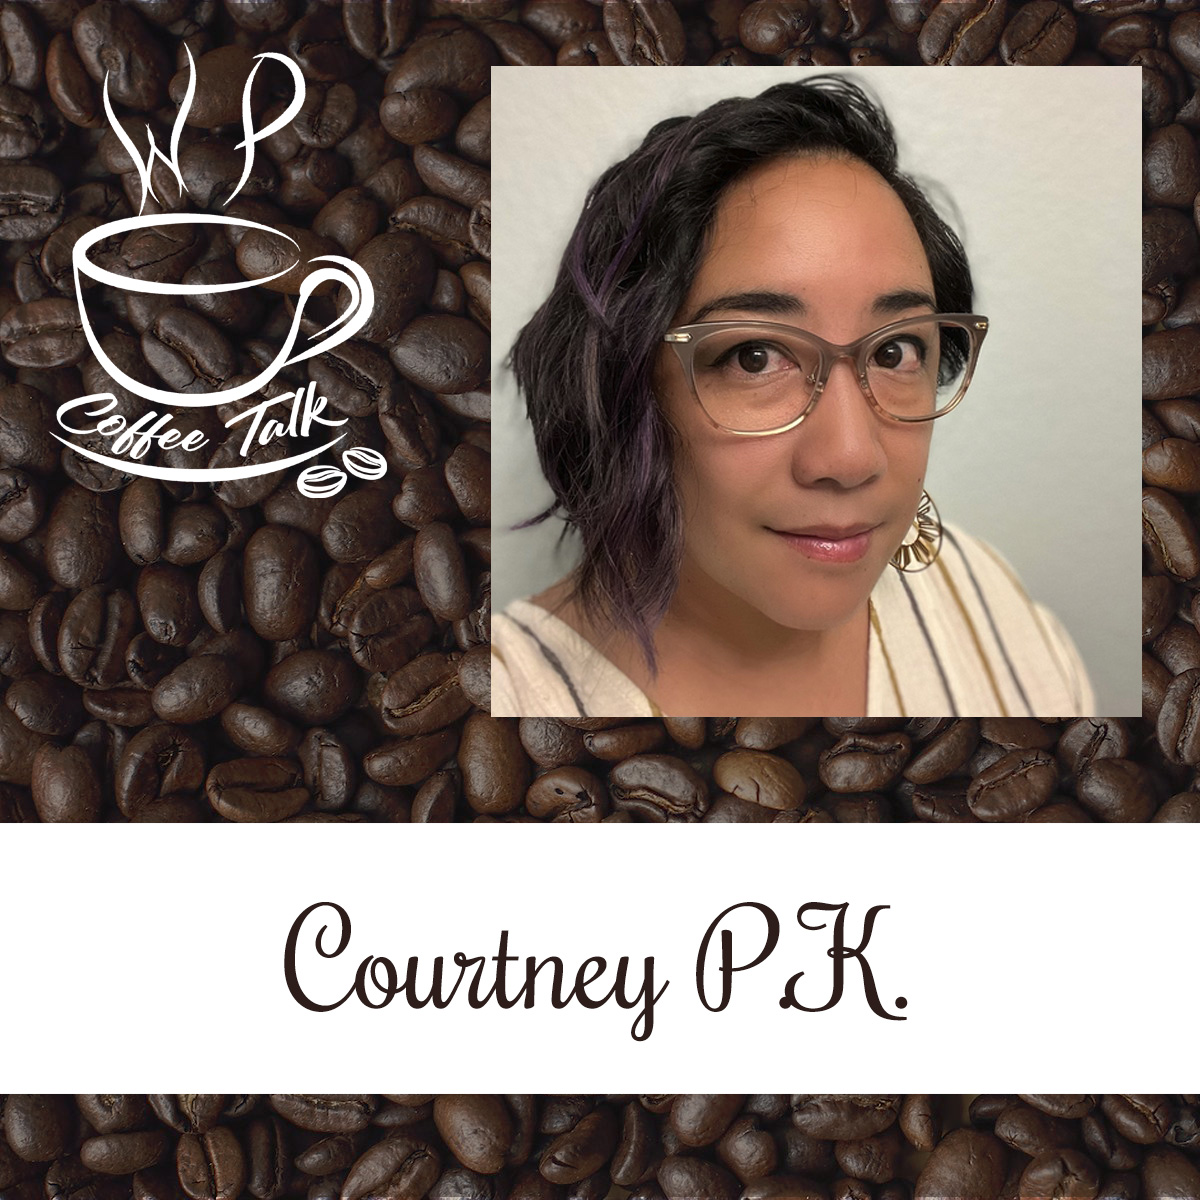 WPCoffeeTalk: Courtney P.K.